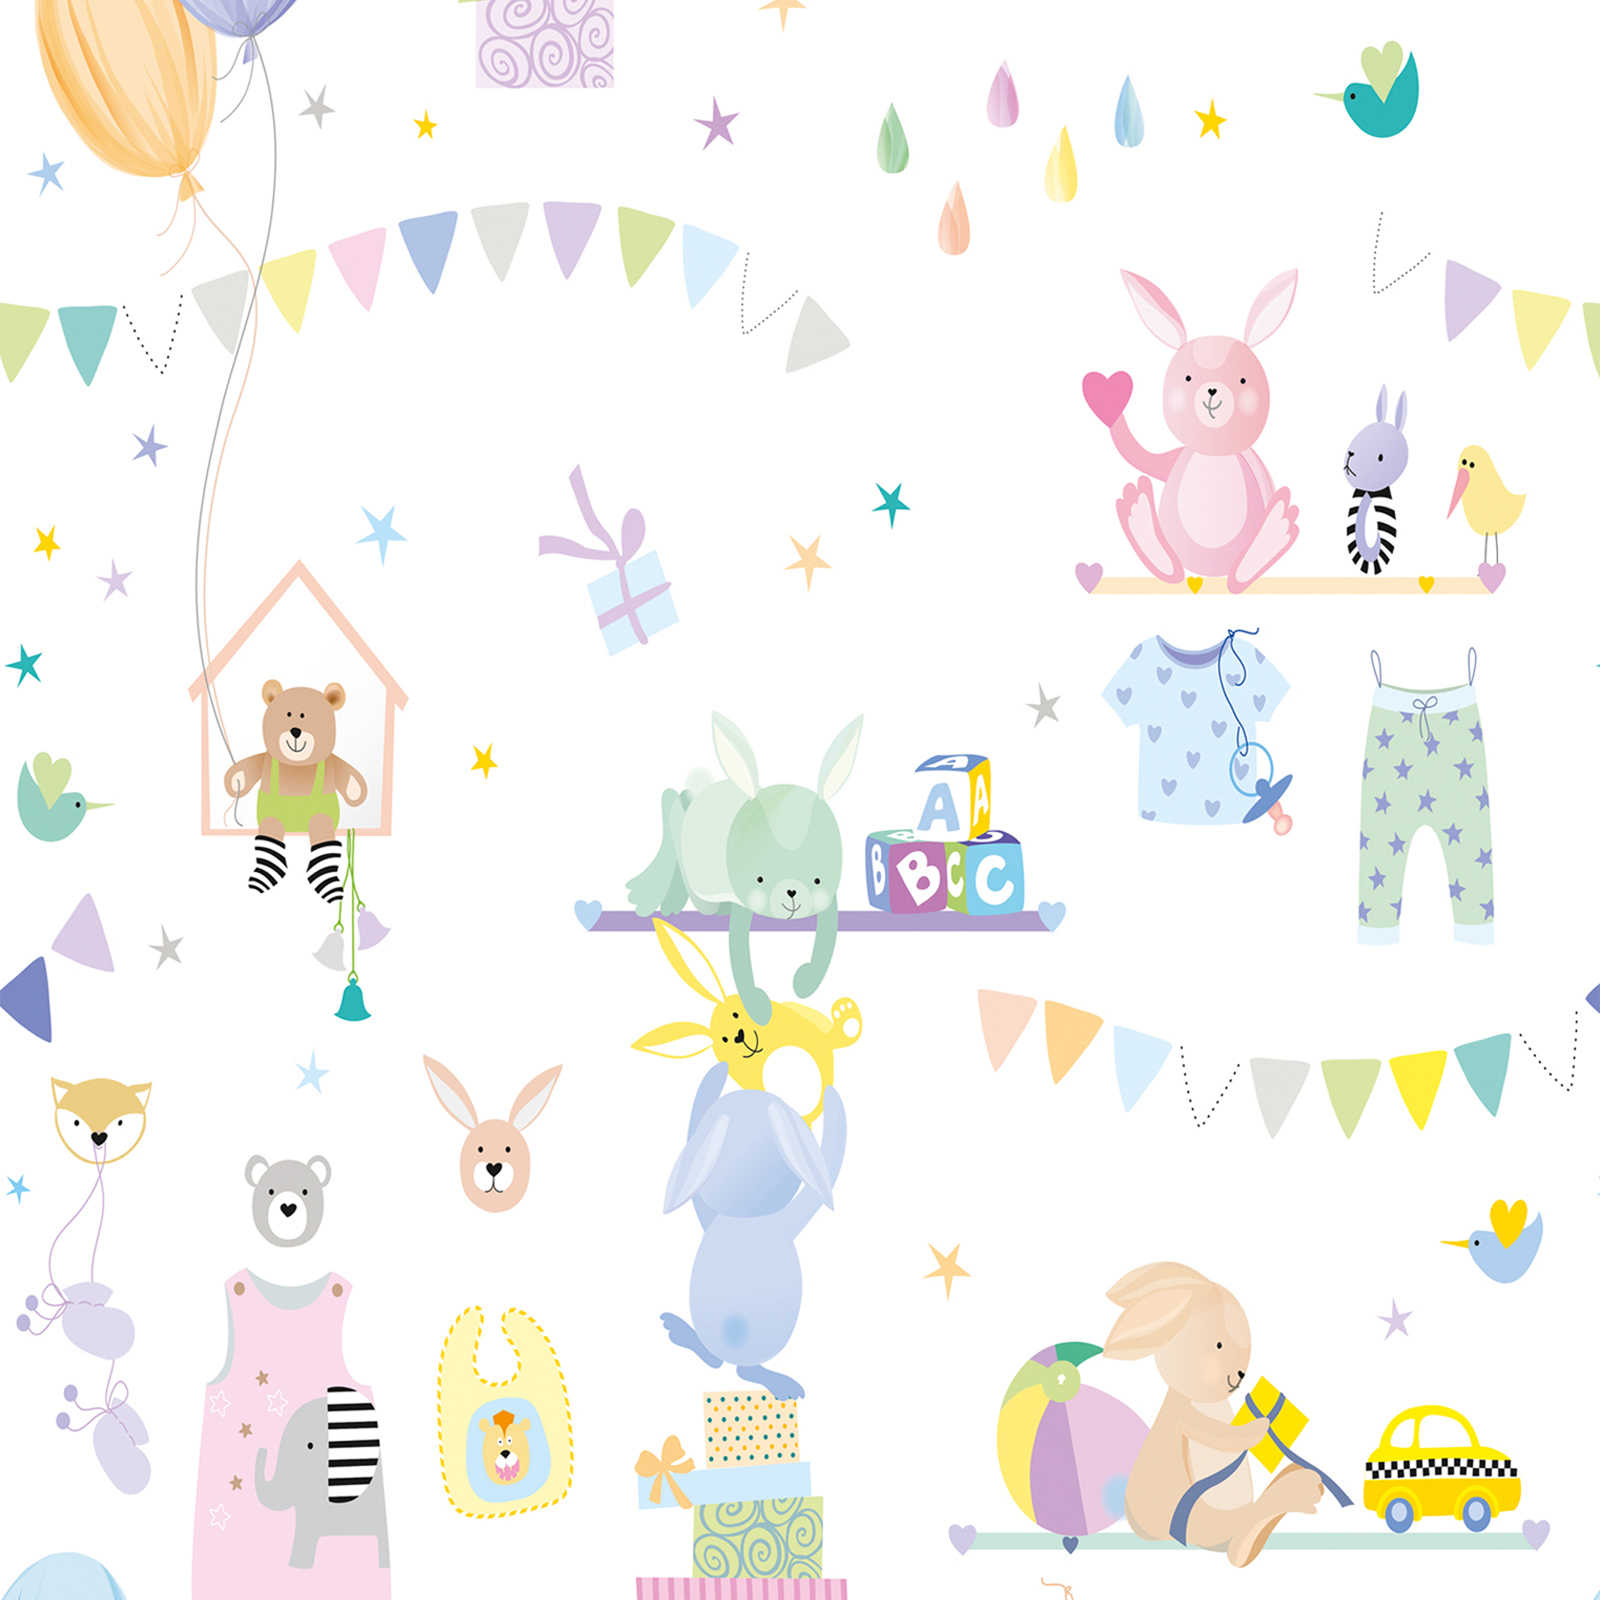 Onderlaag behang met kindermotief met dieren in pastelkleuren - kleurrijk, paars, roze
